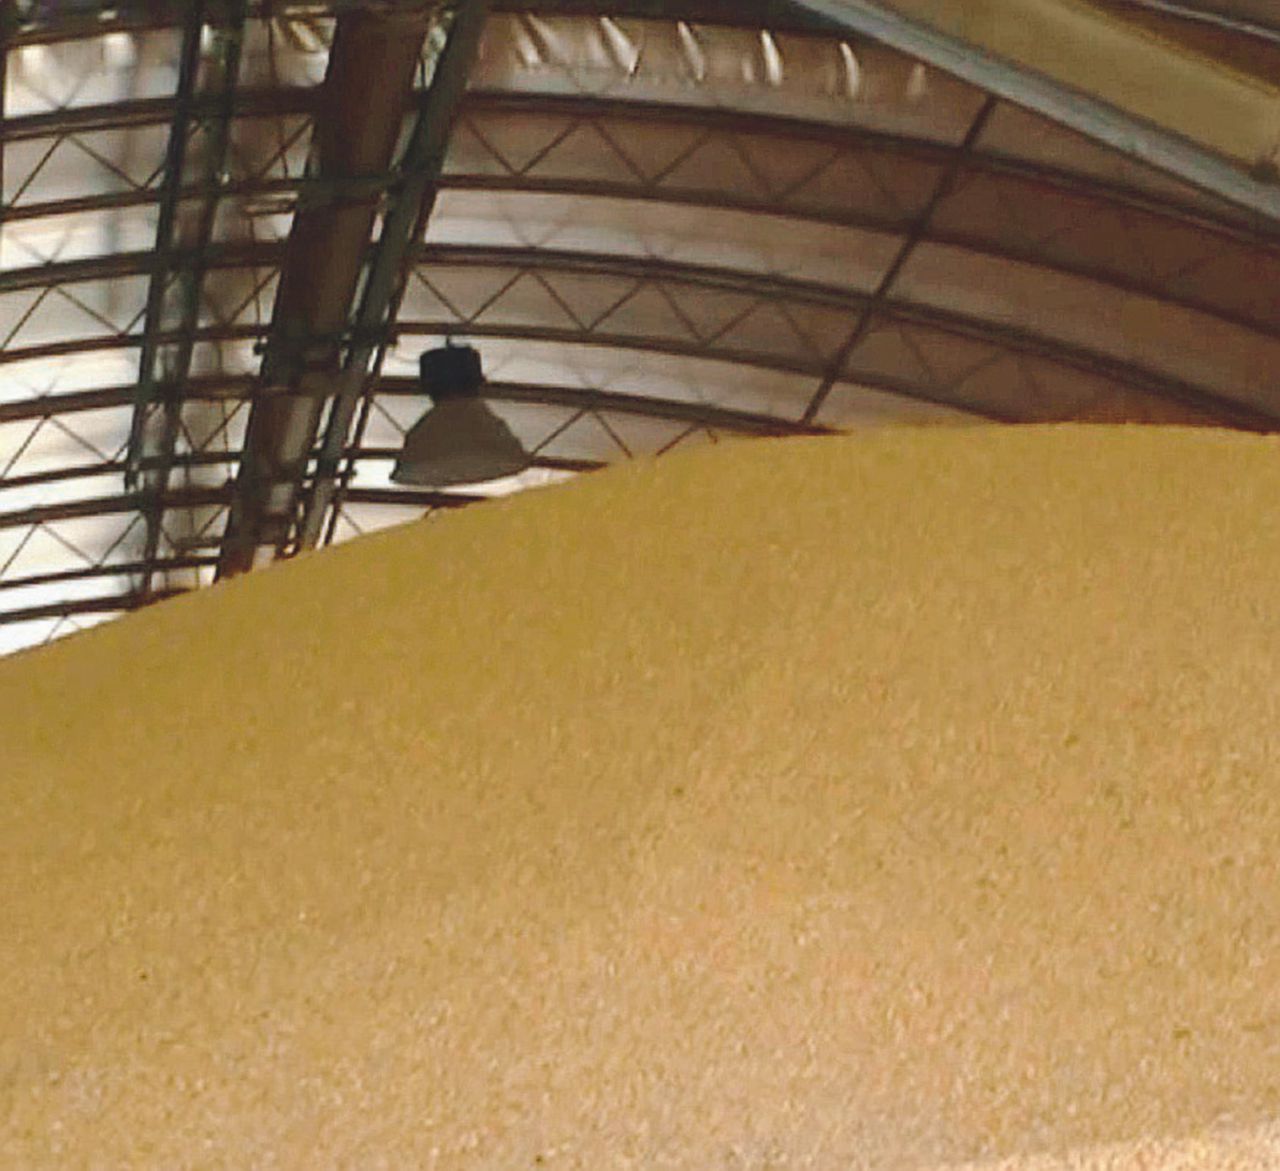 Copertina di “Made in Italy”, ma il grano viene da Ucraina e Messico